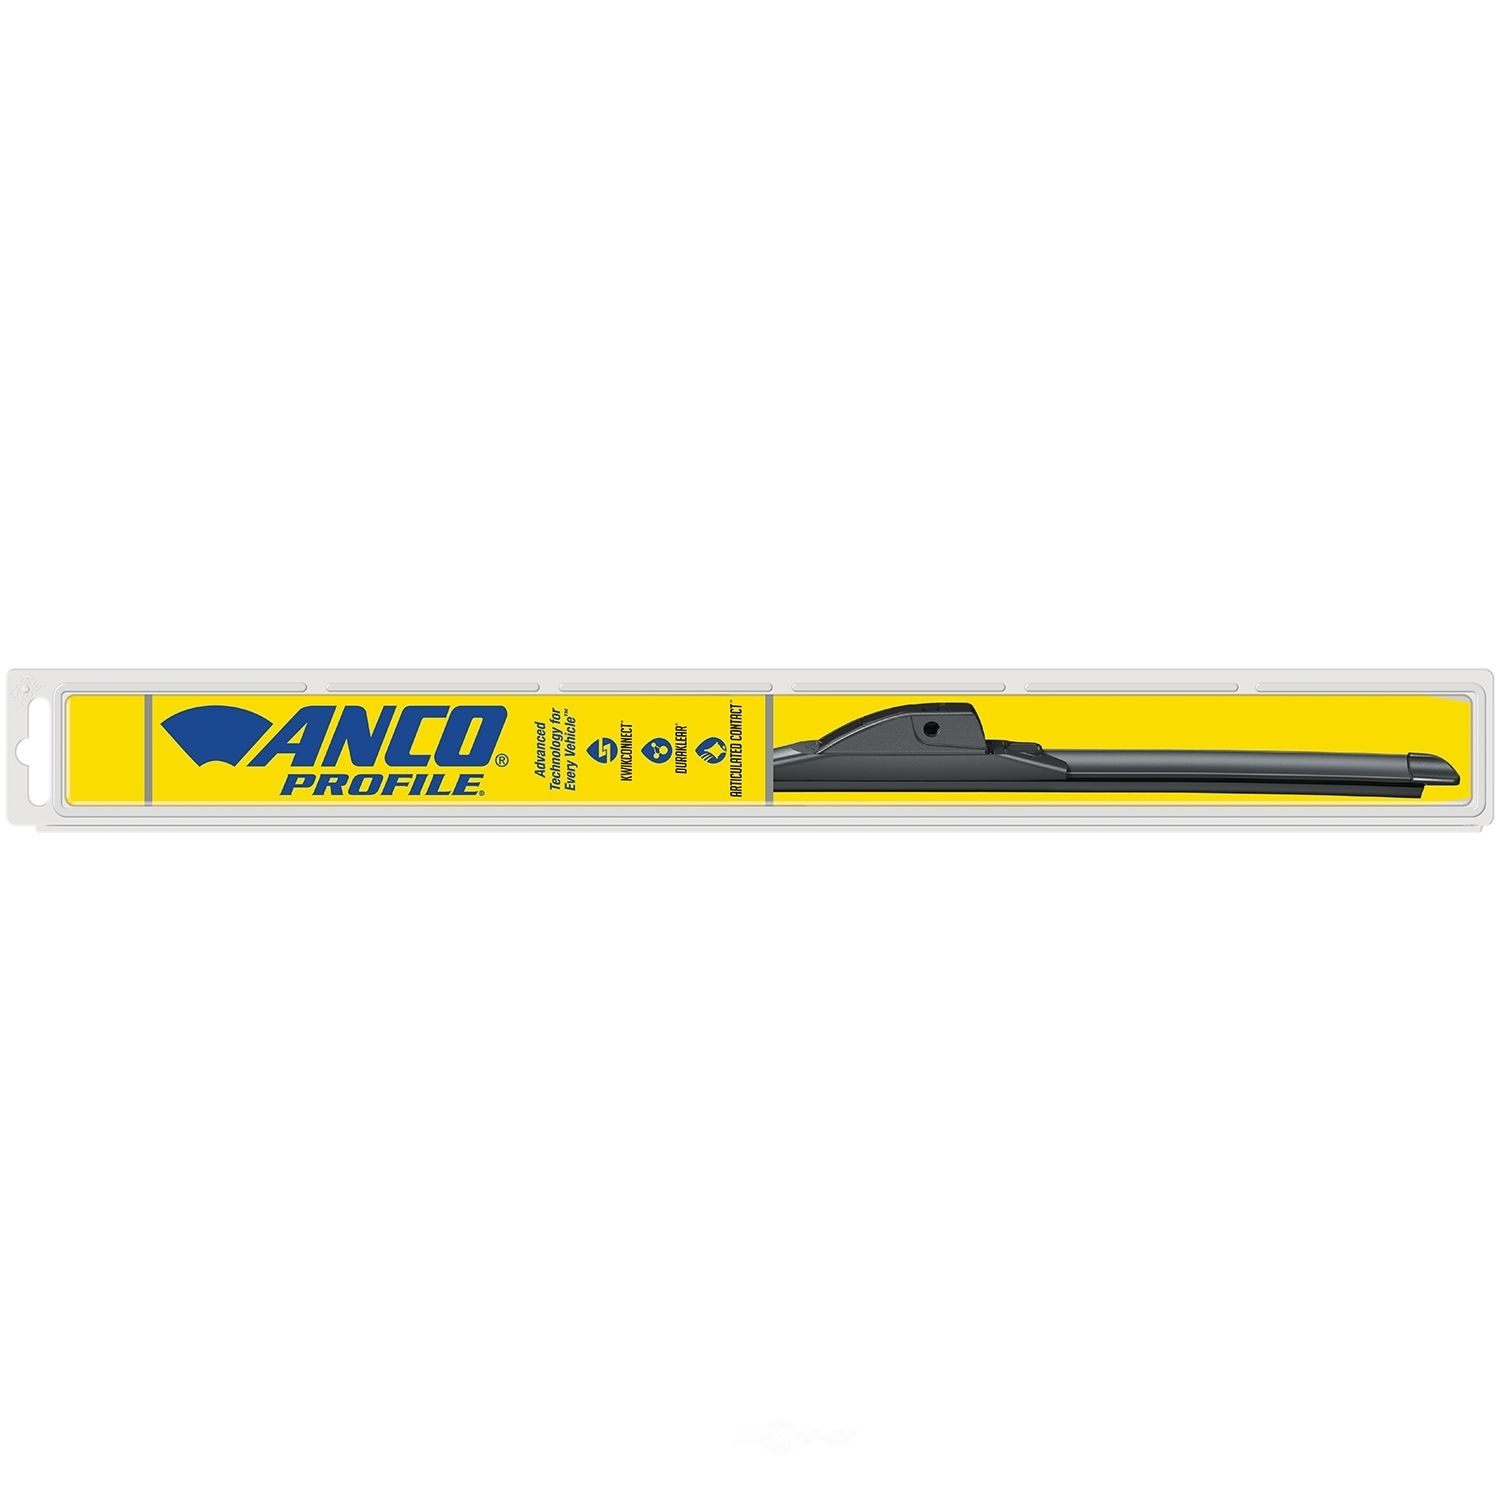 ANCO WIPER PRODUCTS - Profile Wiper Blade - ANC A-18-M